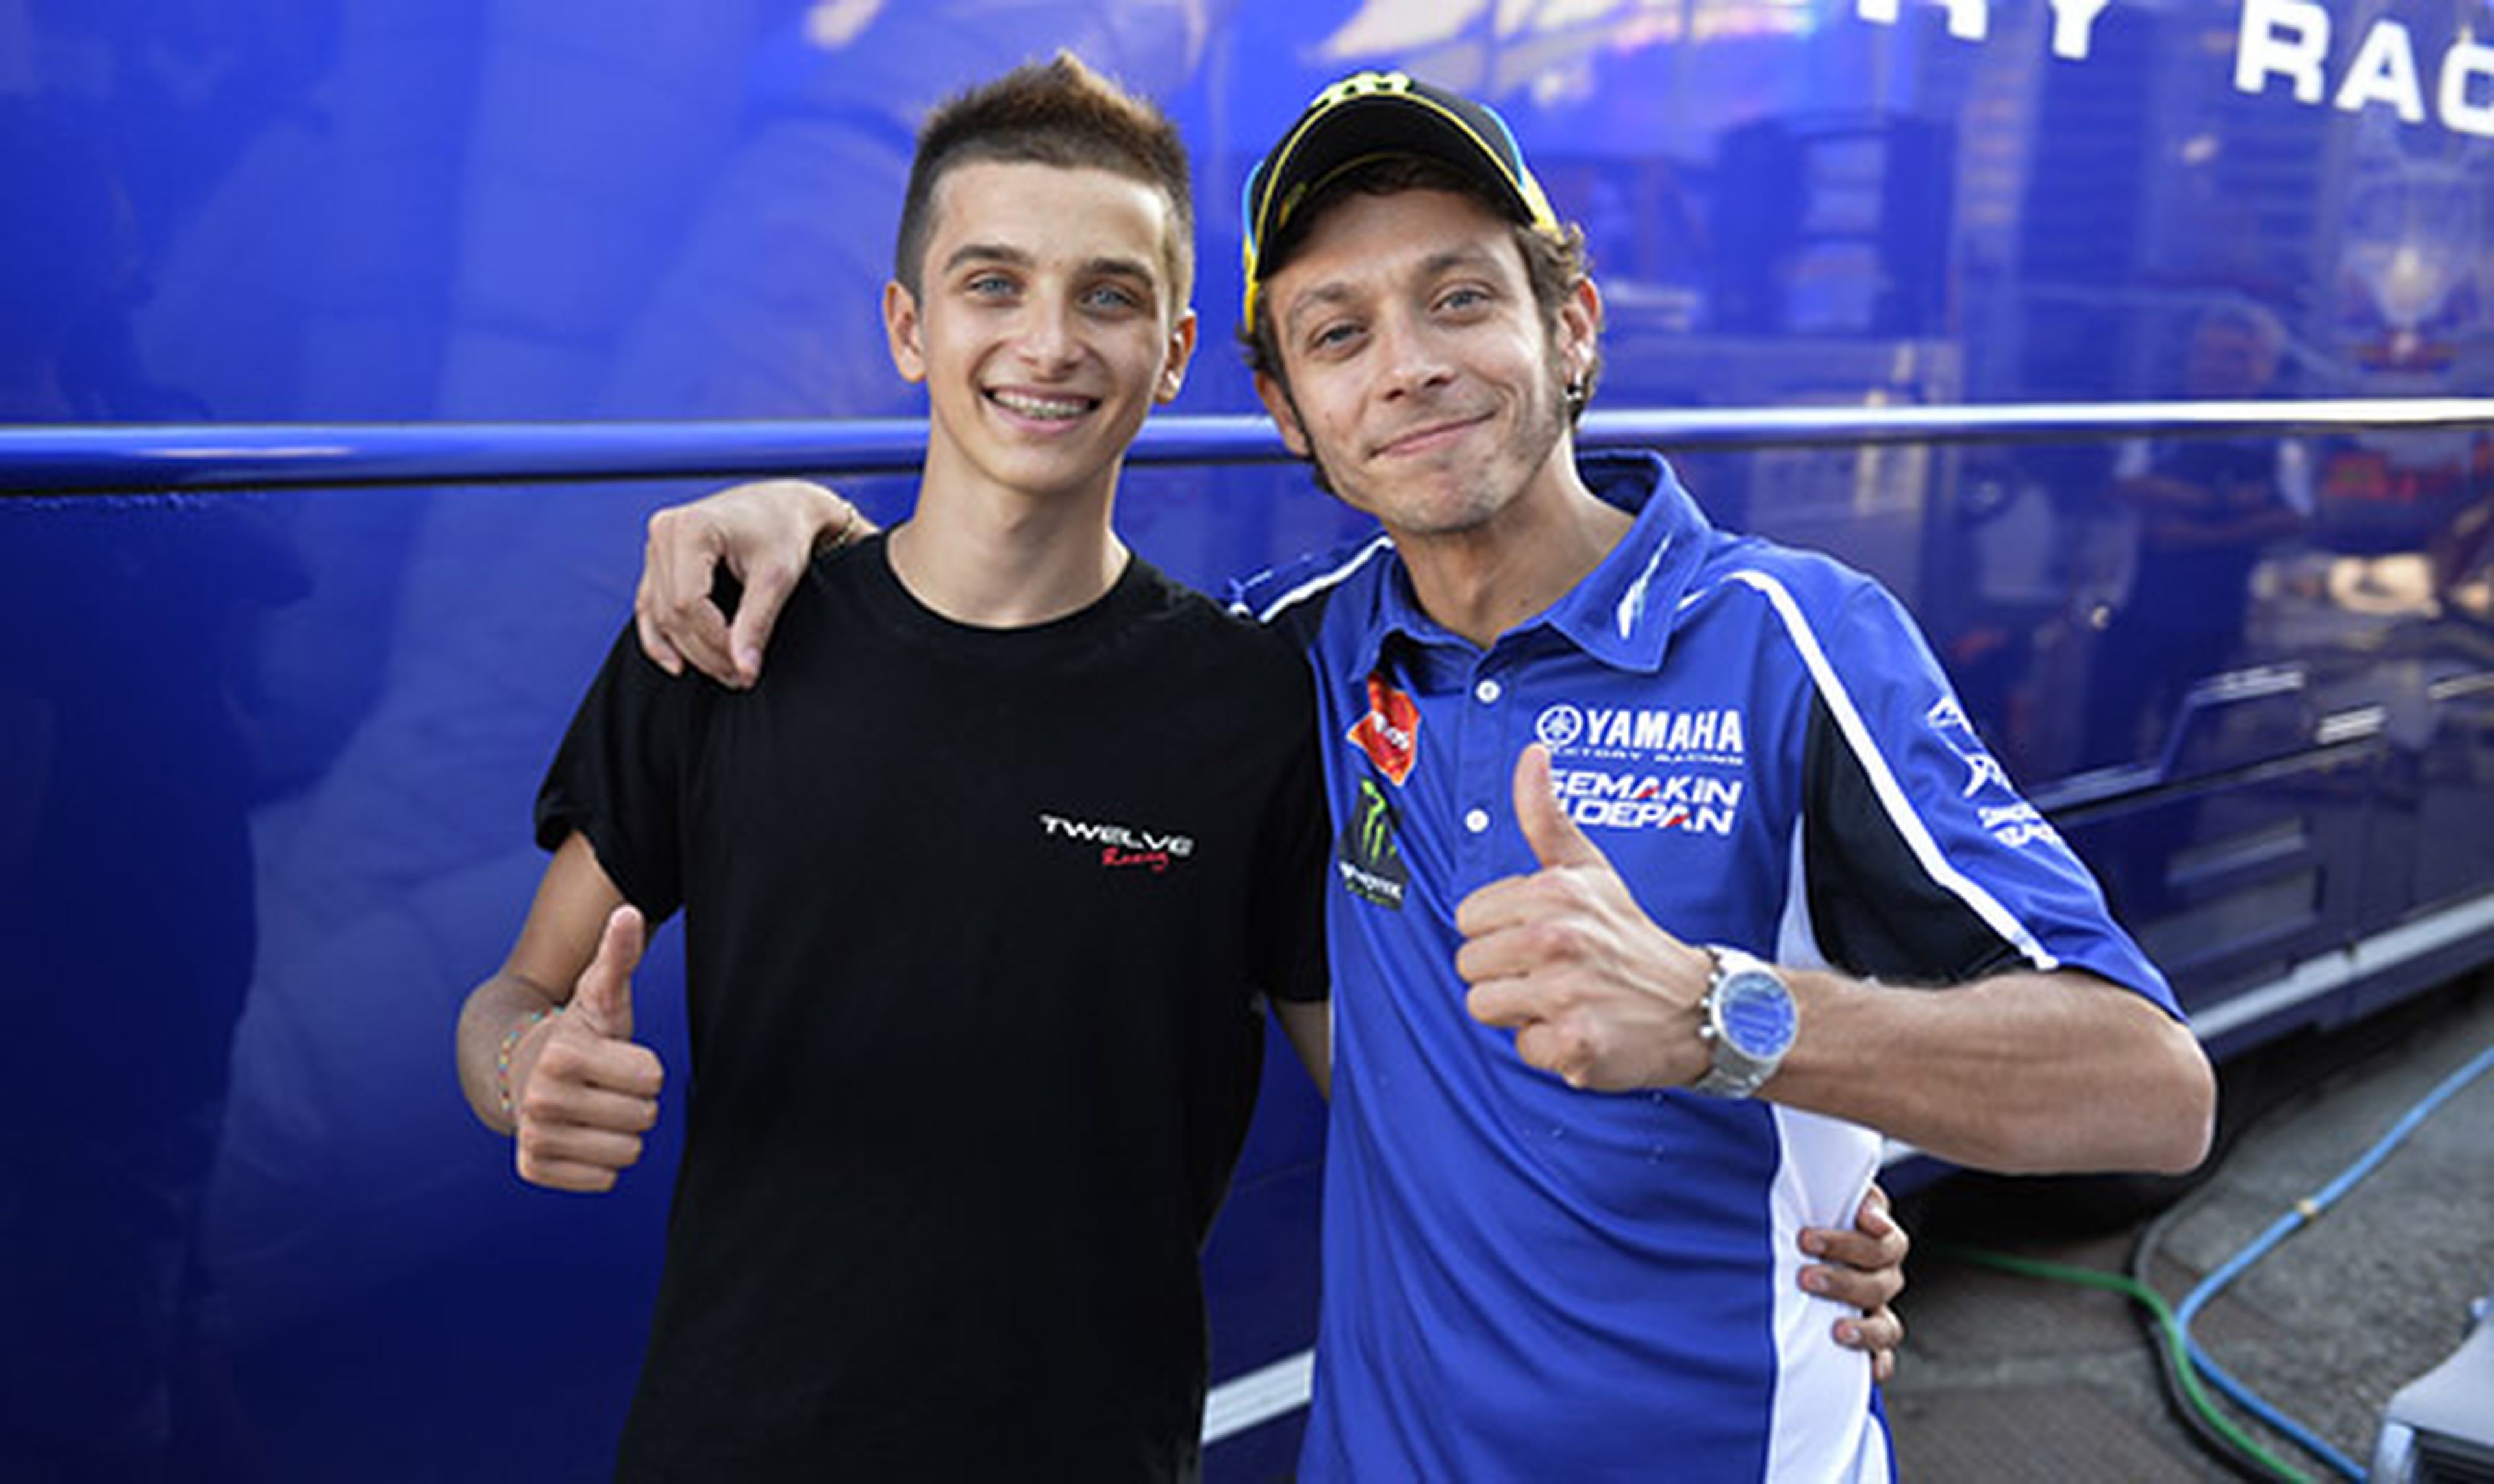 El hermano de Valentino Rossi llega al Mundial de Moto2